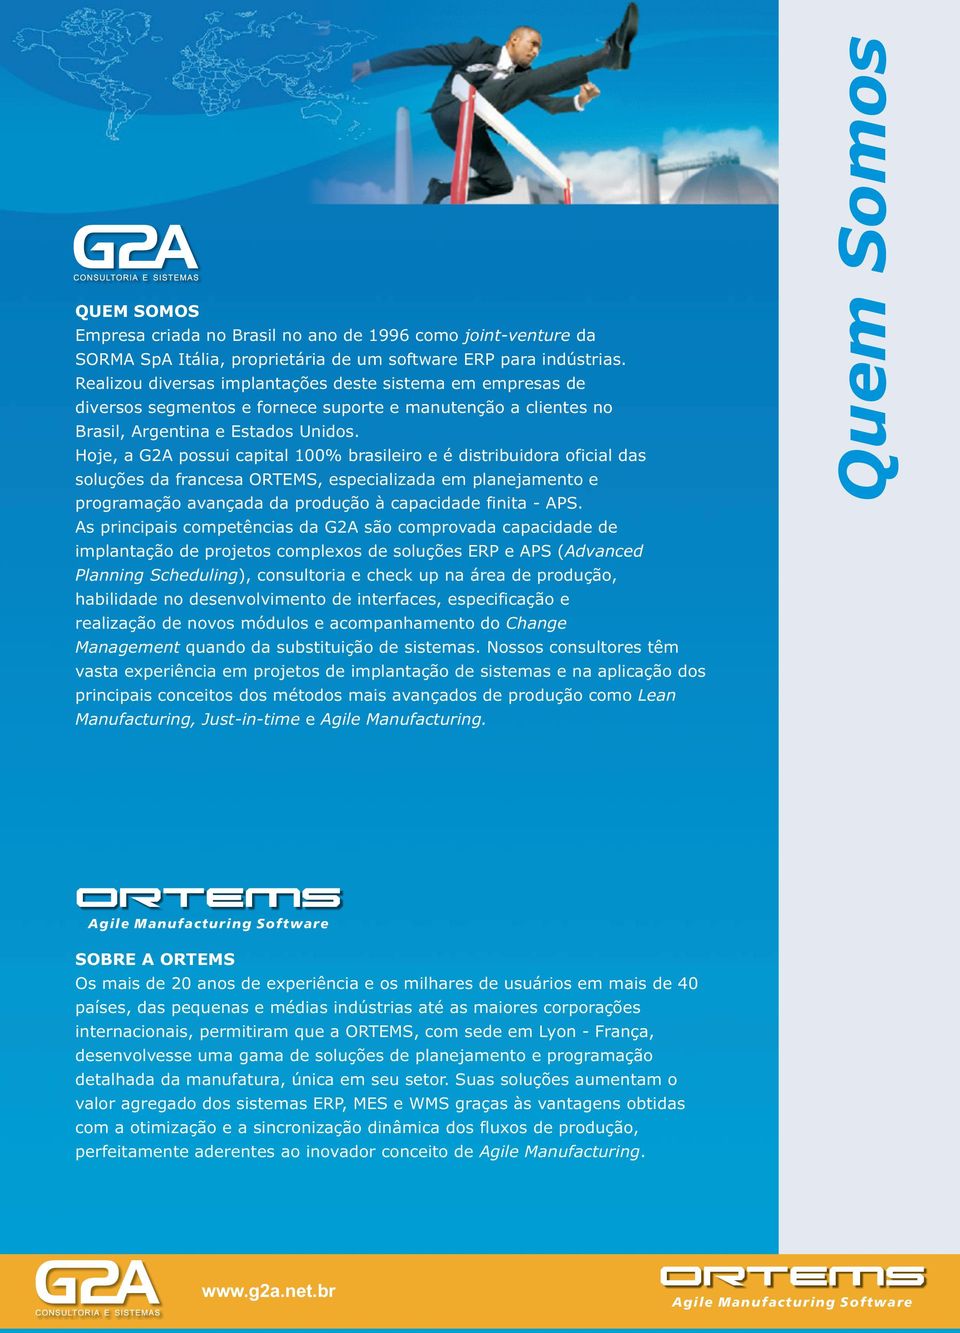 Hoje, a G2A possui capital 100% brasileiro e é distribuidora oficial das soluções da francesa ORTEMS, especializada em planejamento e programação avançada da produção à capacidade finita - APS.